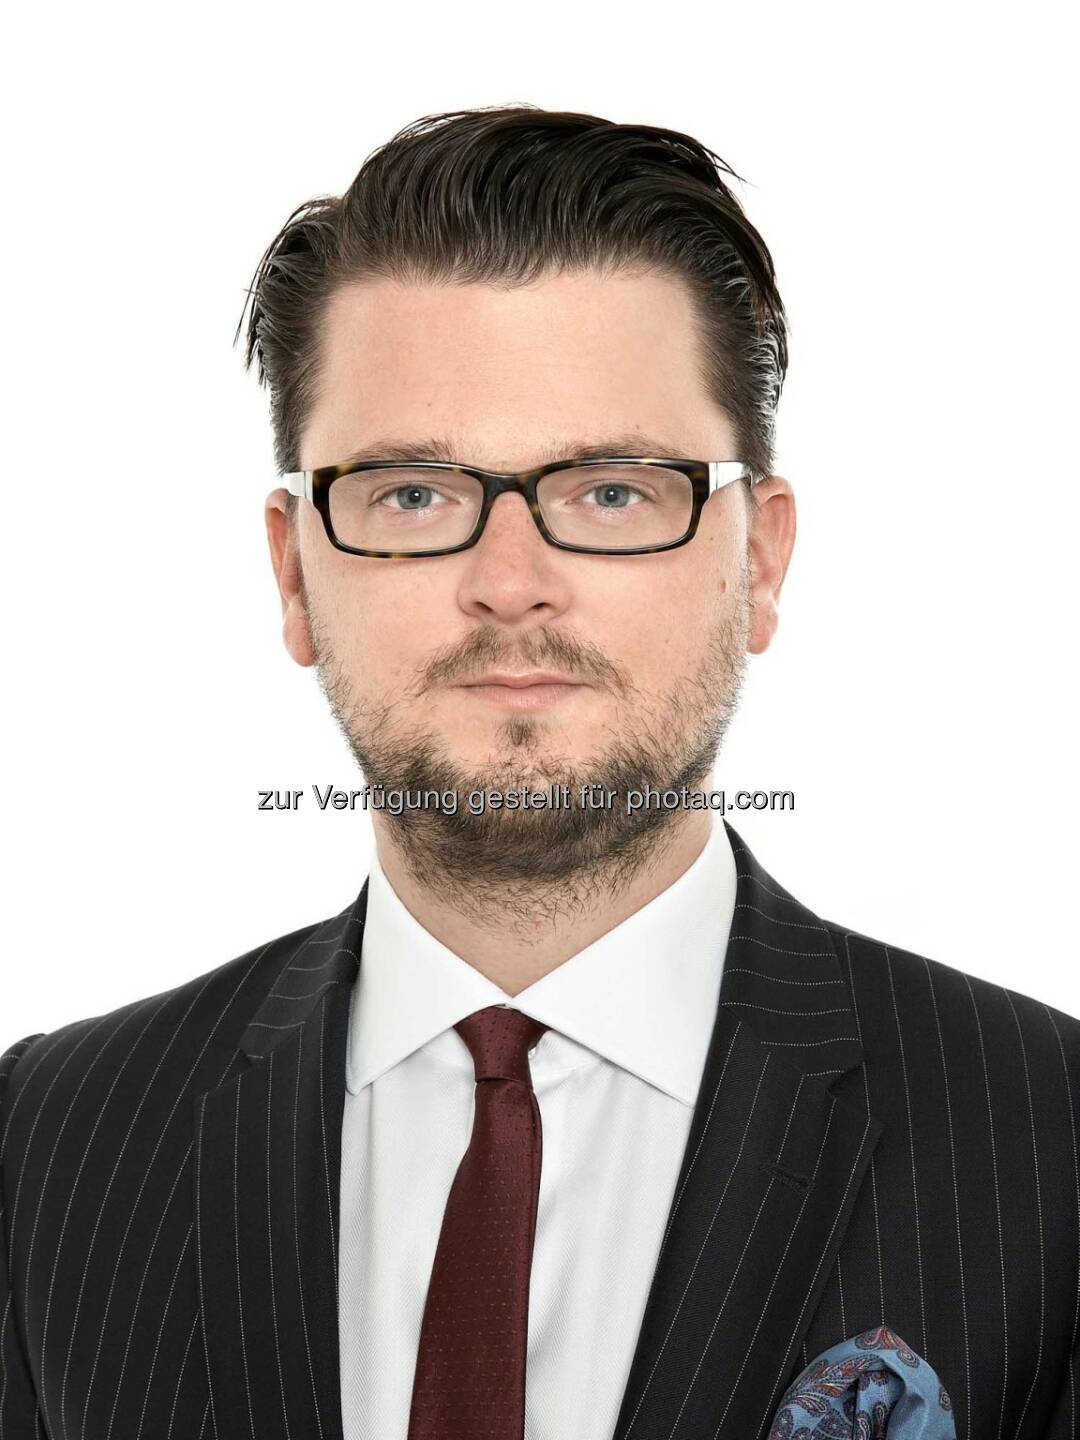 Thomas Kulnigg wurde mit 1. Februar 2015 zum Partner der Rechtsanwaltskanzlei Schönherr ernannt.